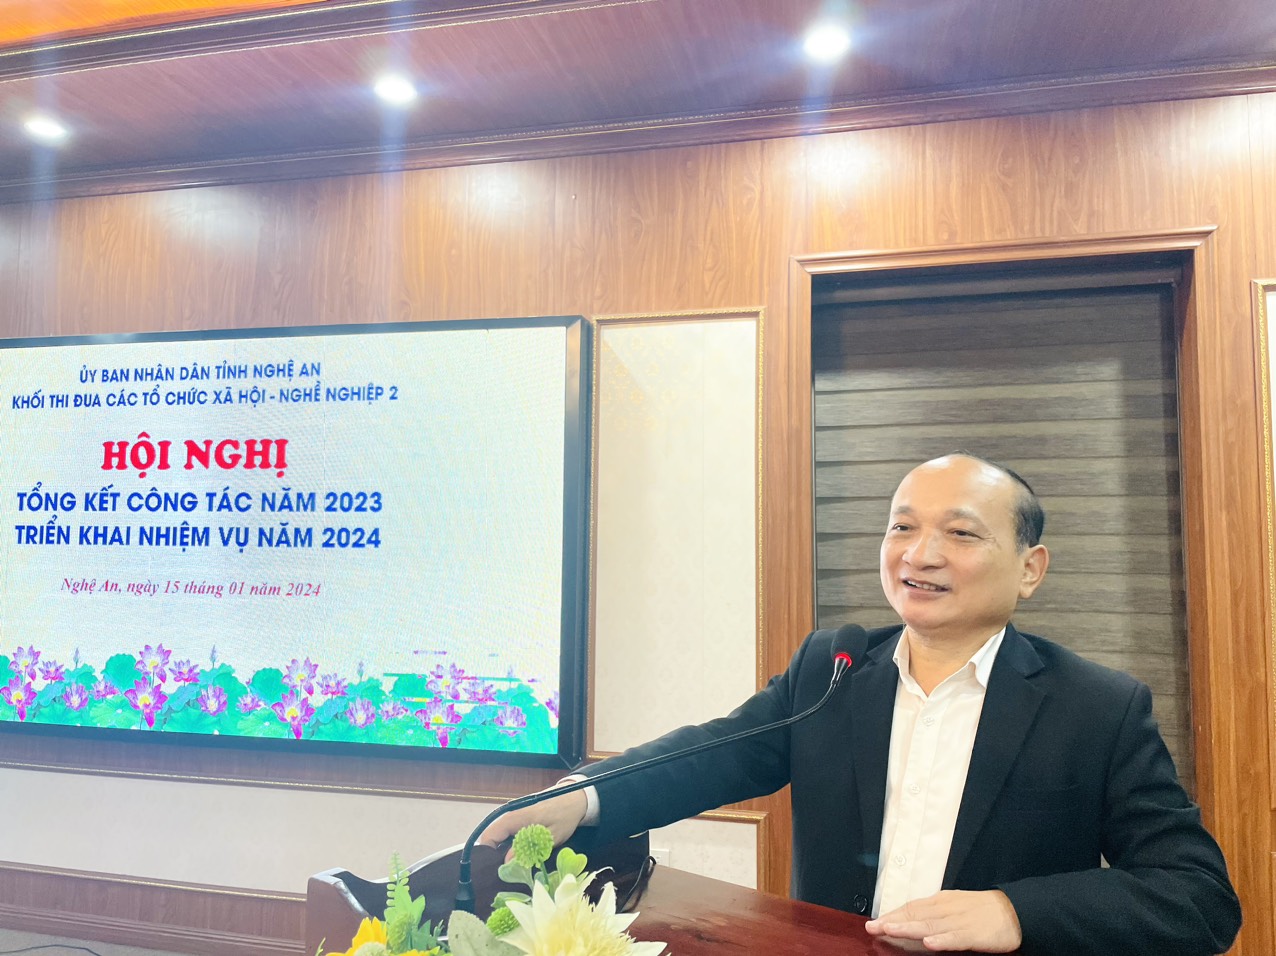 2 Đồng chí Nguyễn Thanh Hiên Chủ tịch Hội Khuyến học Nghệ An Cụm trưởng Thu đua năm 2023 phát biểu